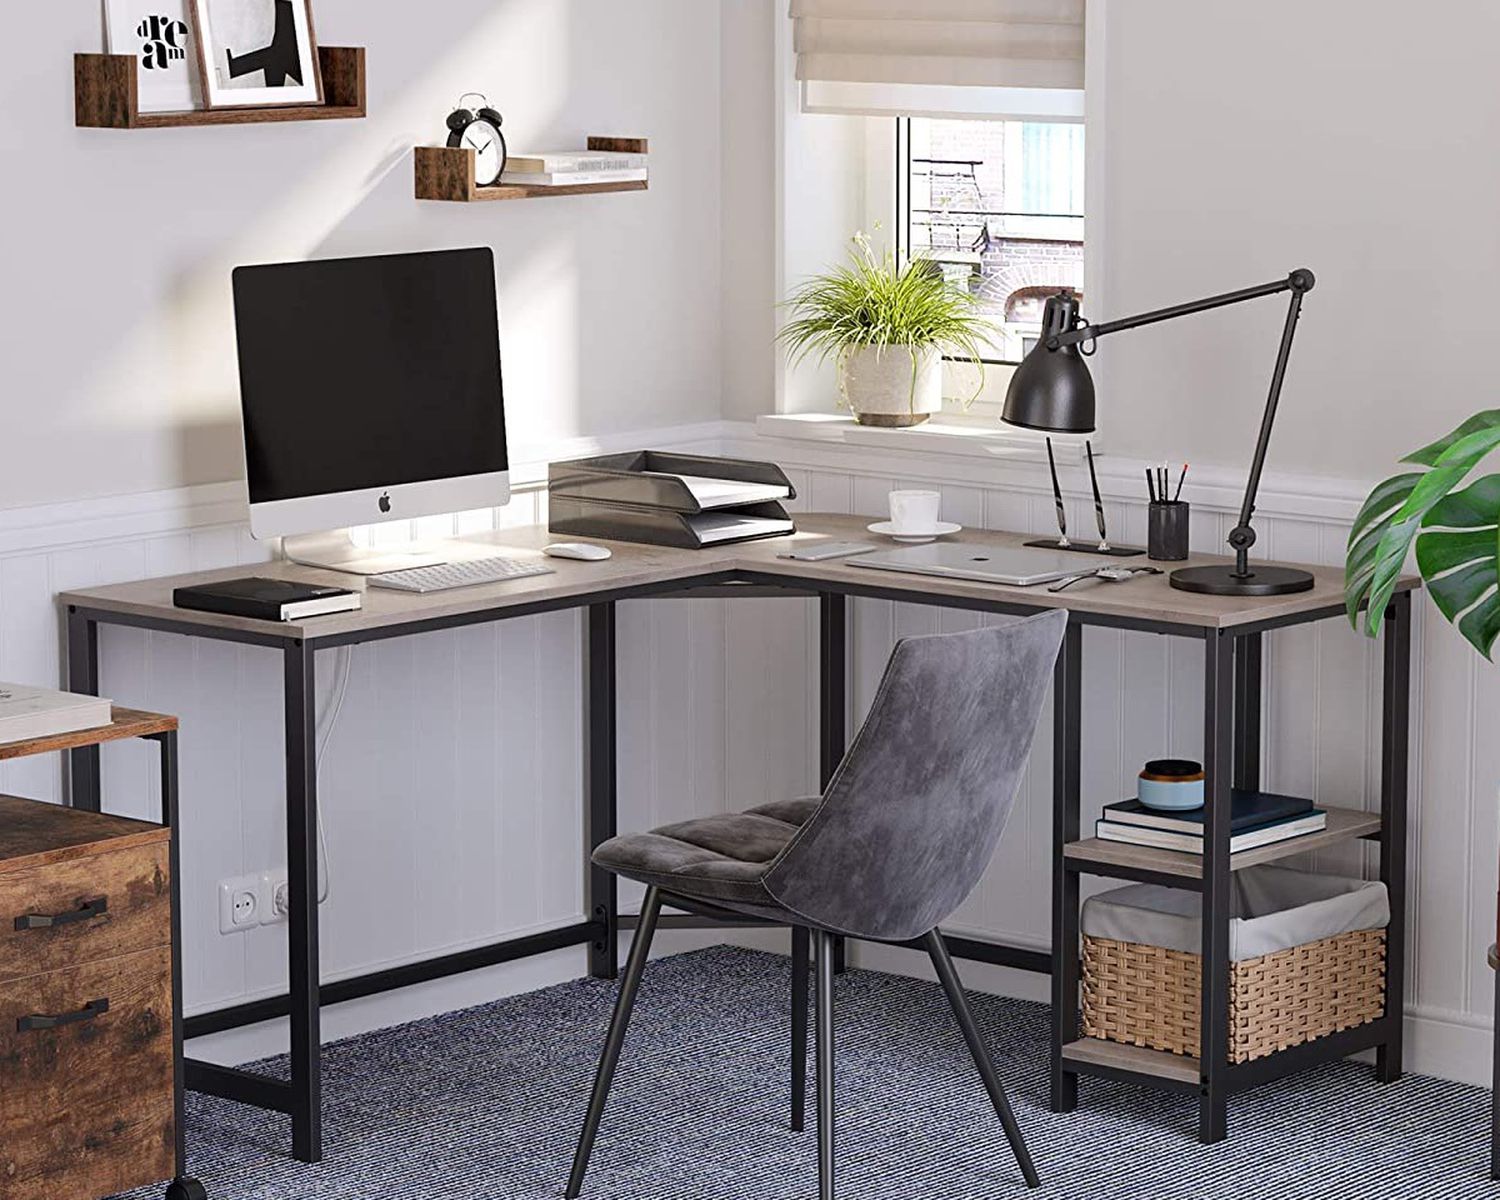 54-Inch L-Shaped Corner Desk / Computer Desk / Writing Study Workstation with Shelves